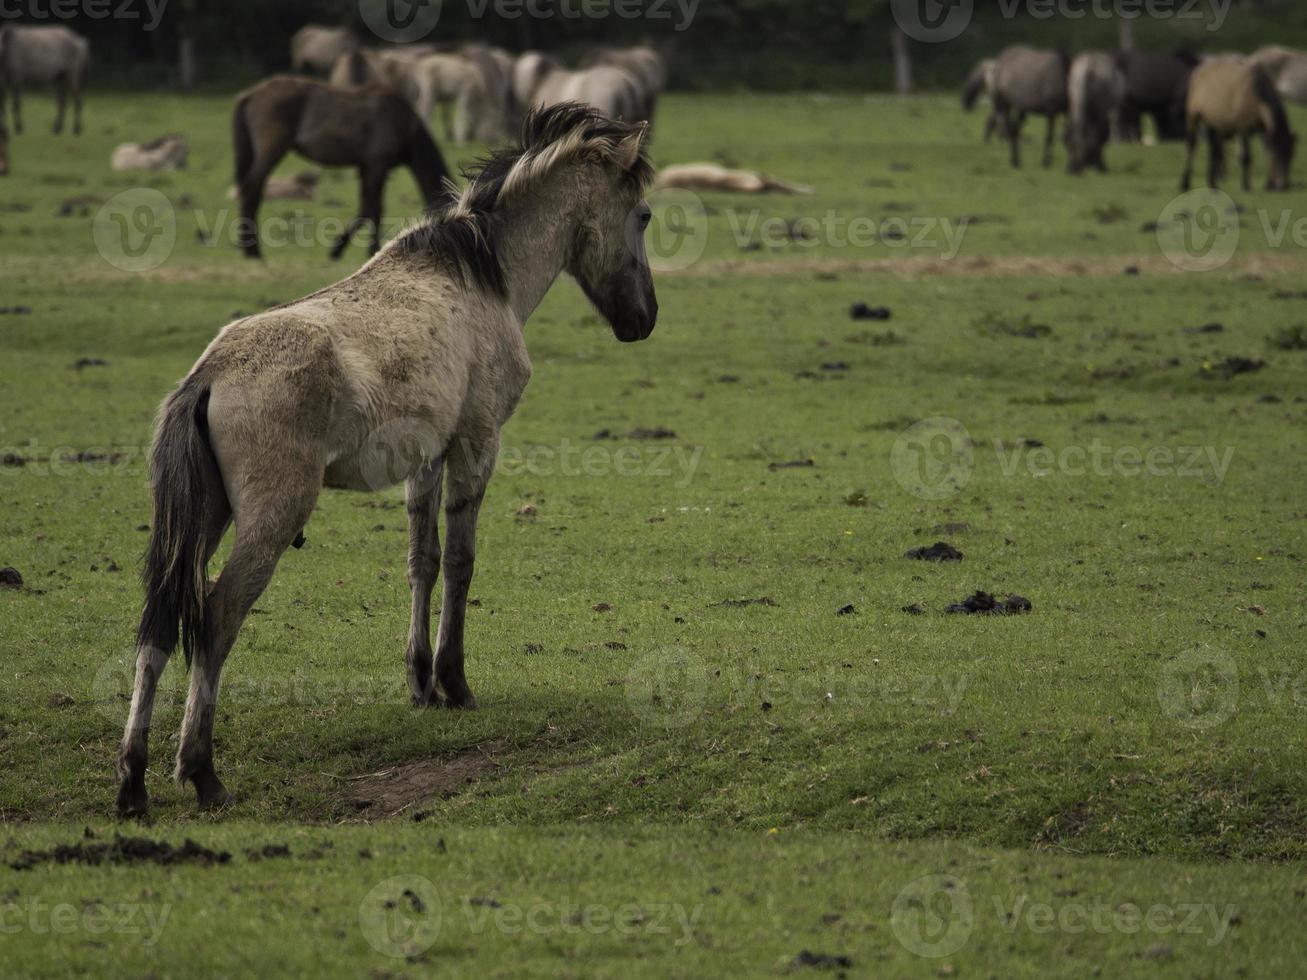 caballos salvajes en westfalia foto